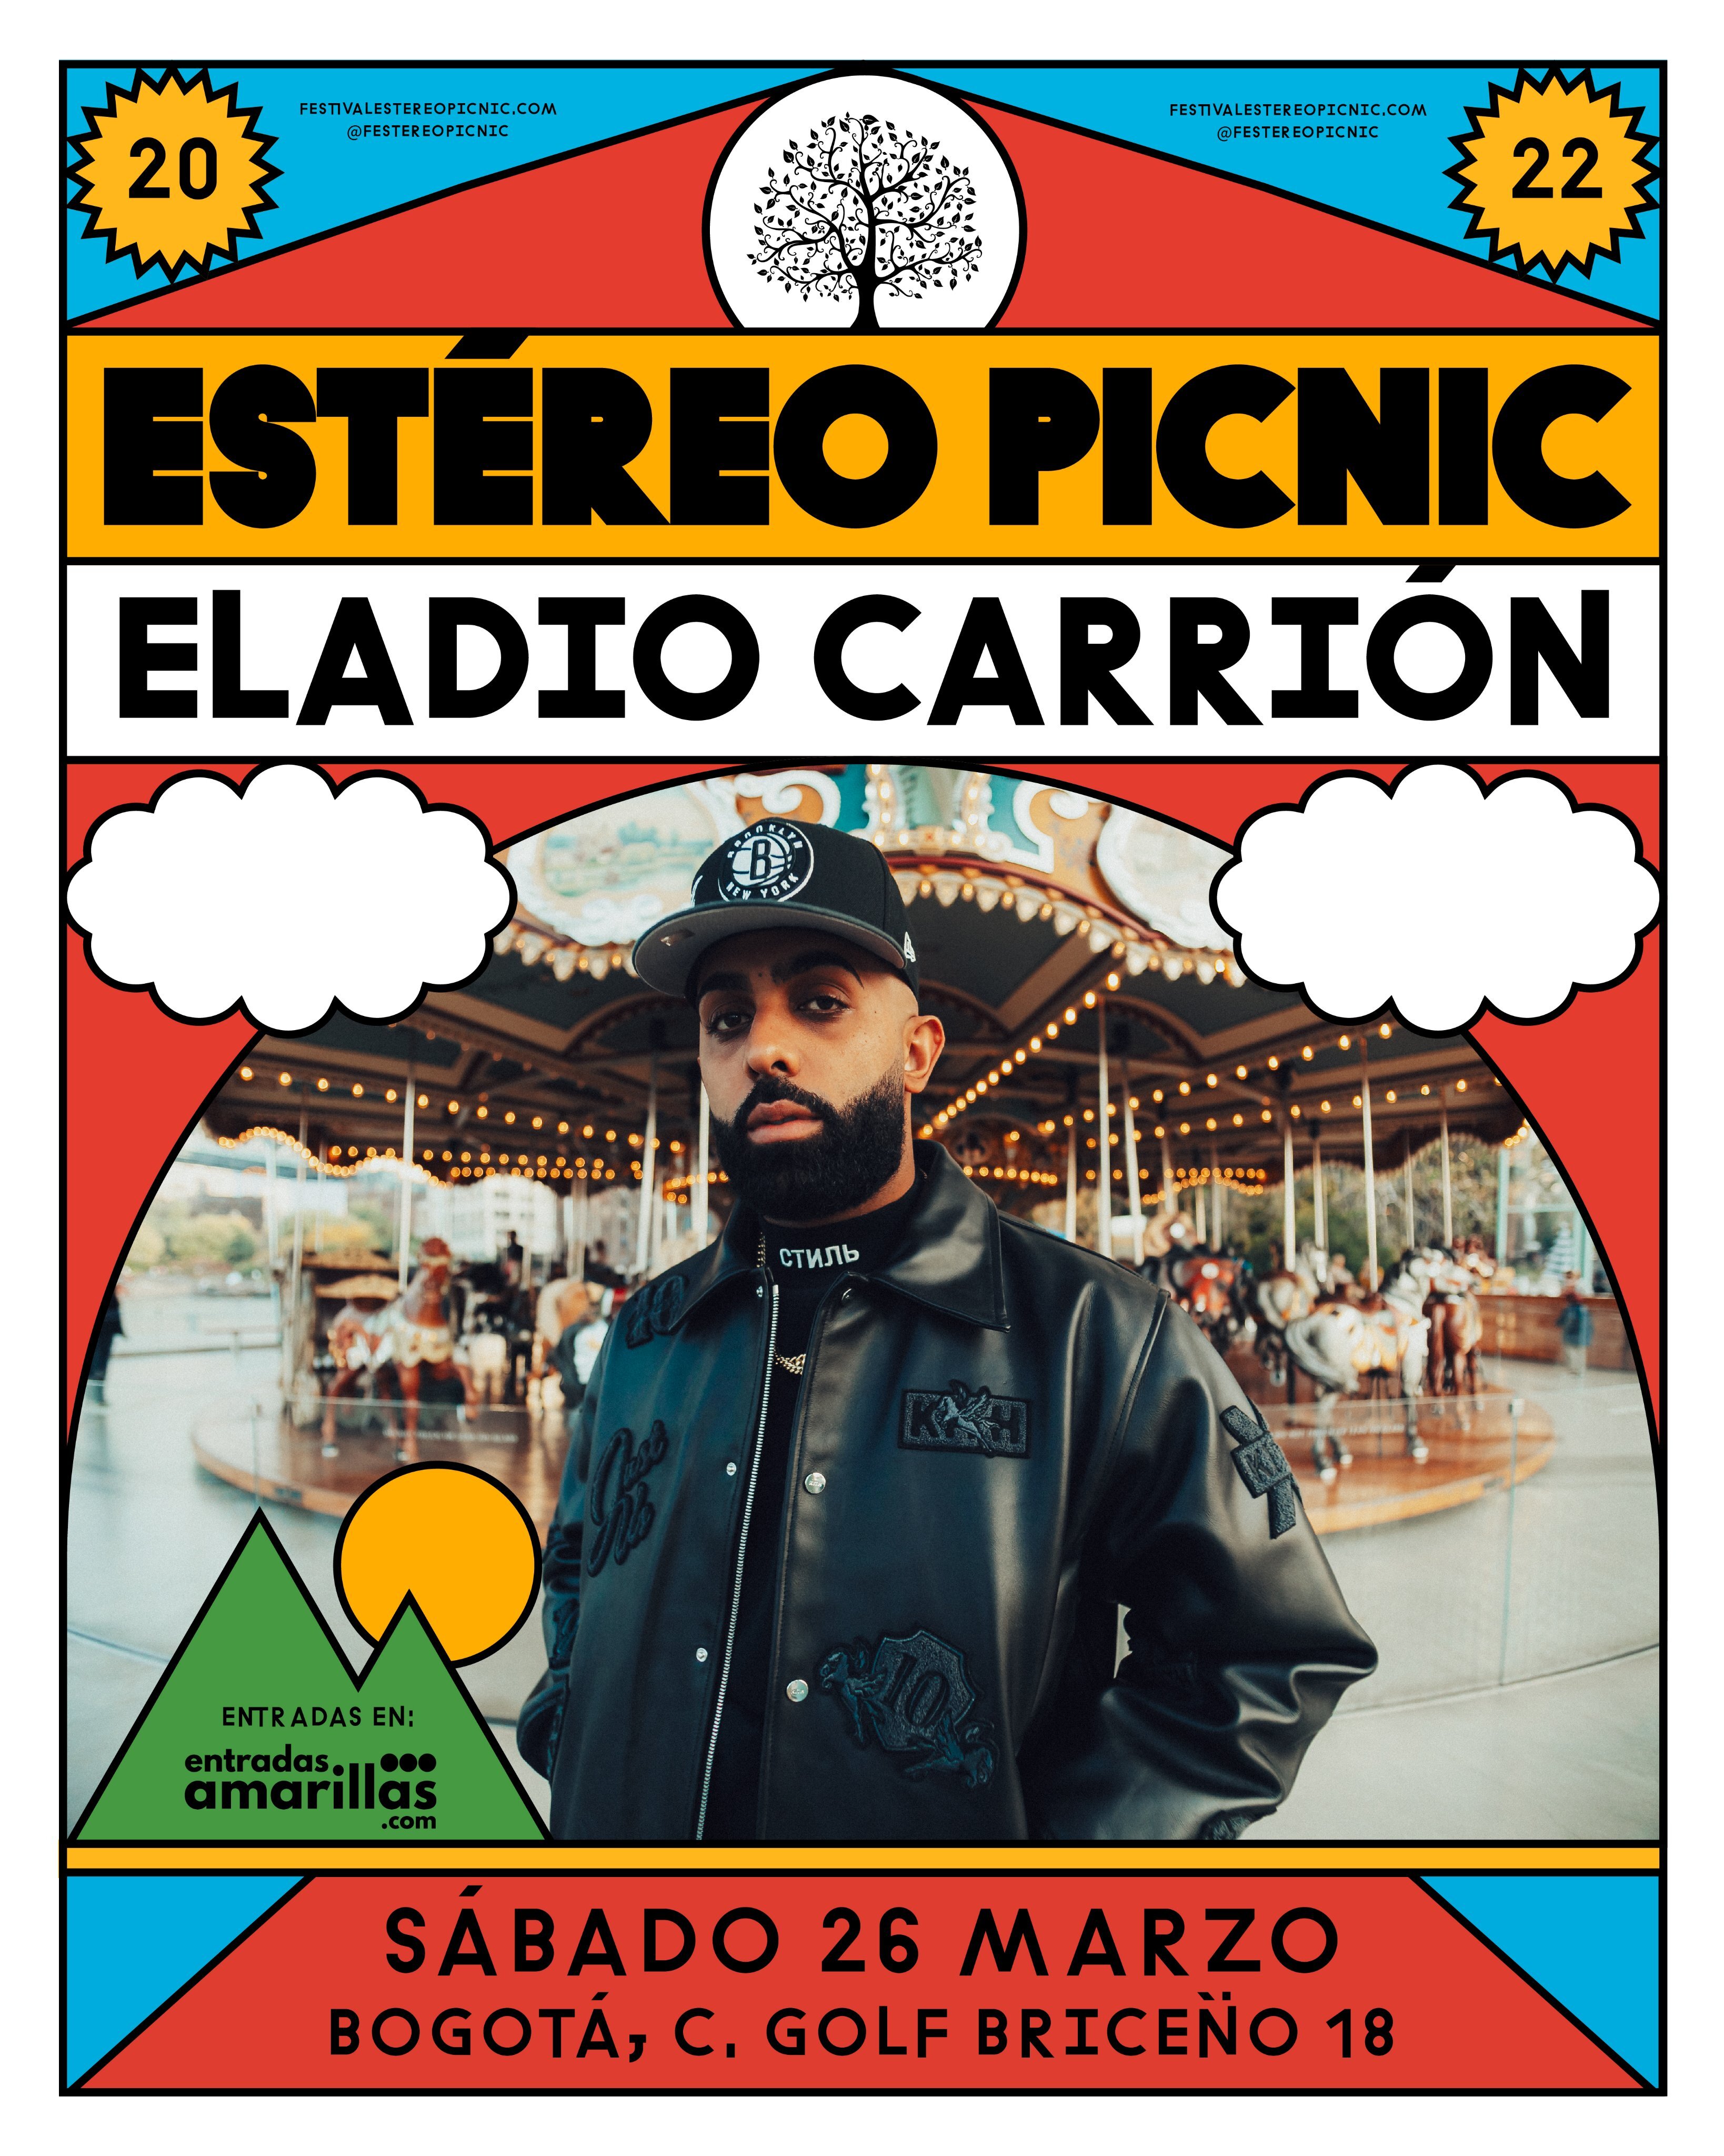 Eladio Carrión aterriza a un mundo distinto, presente en el Festival Estéreo Picnic 2022